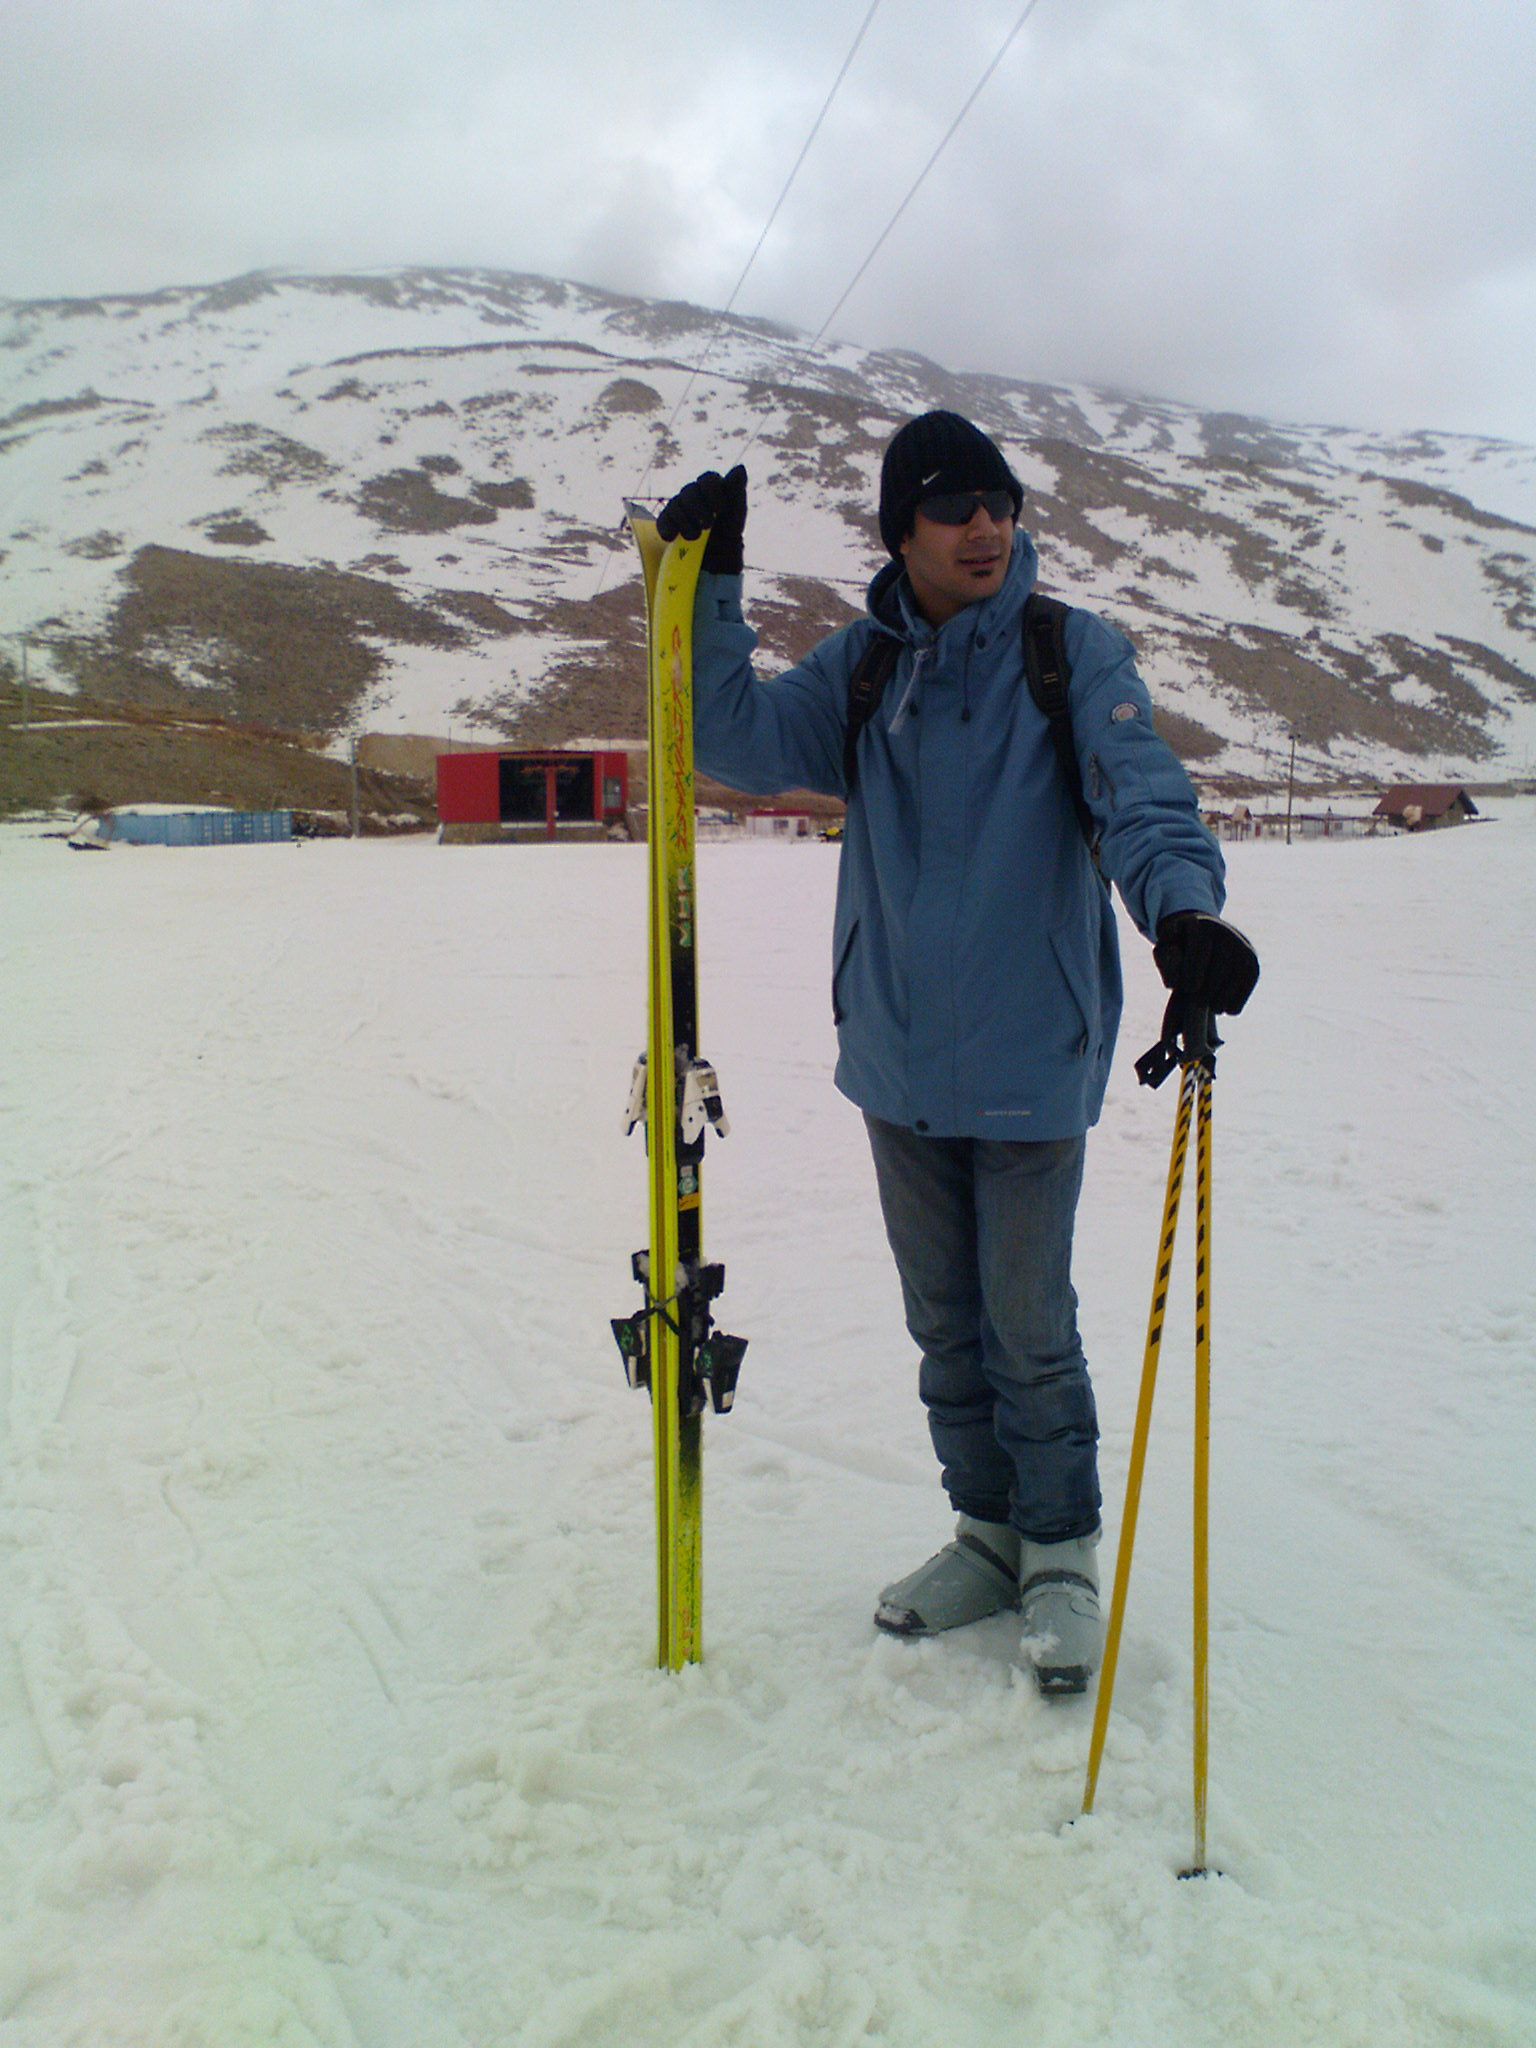 poolad kaf, Pooladkaf Ski Resort